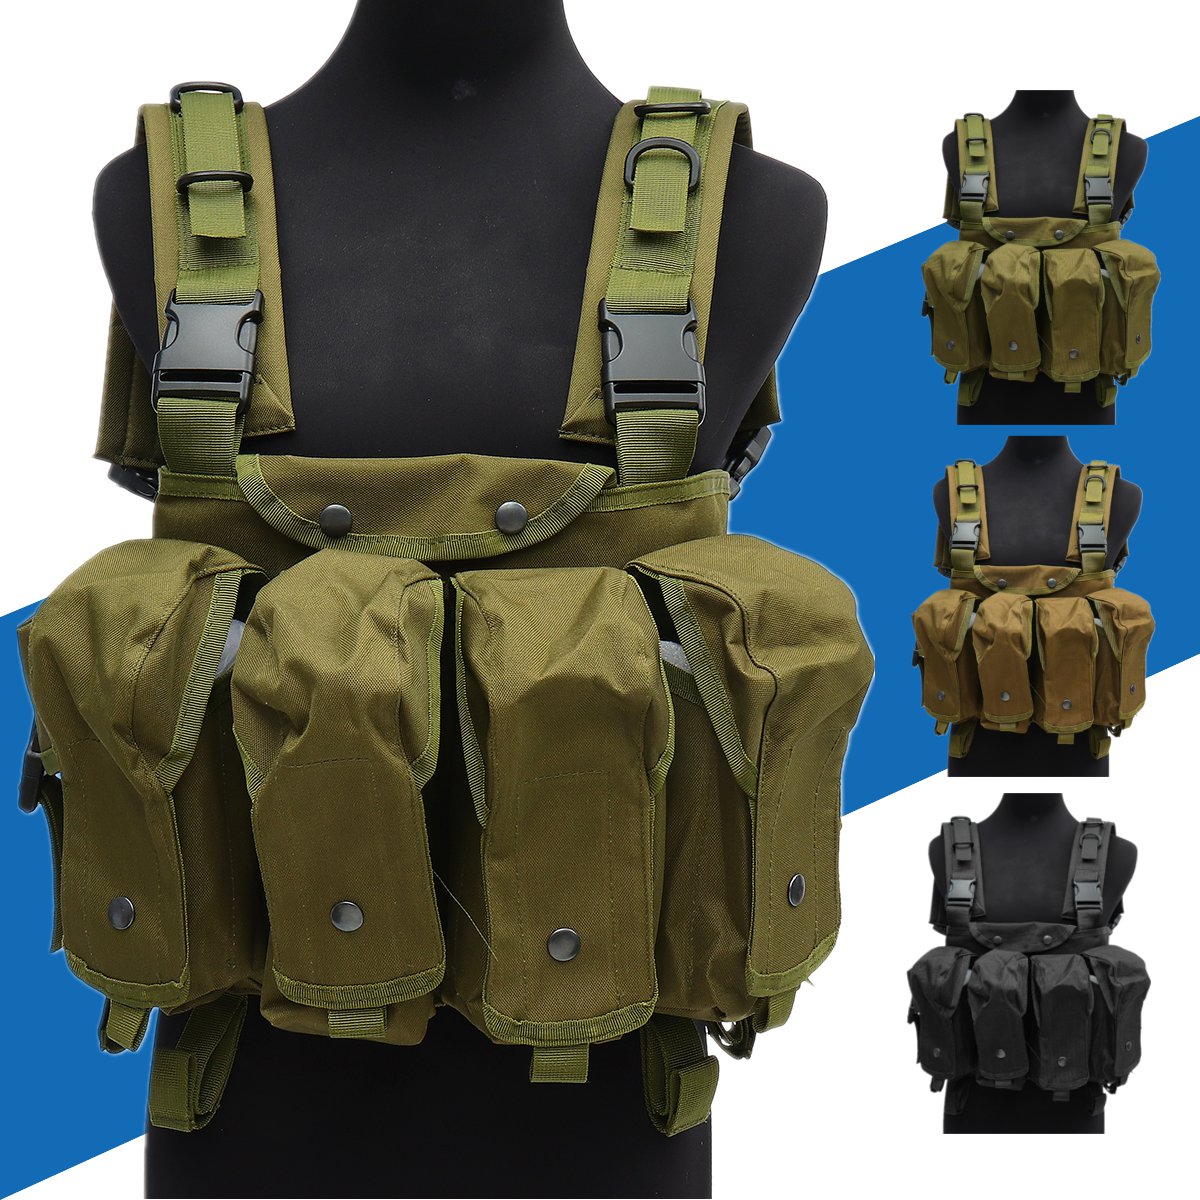 

Unisex Tactical Vest Outdoor Combat Game Training Storage Carrier Belly Pocket Vest